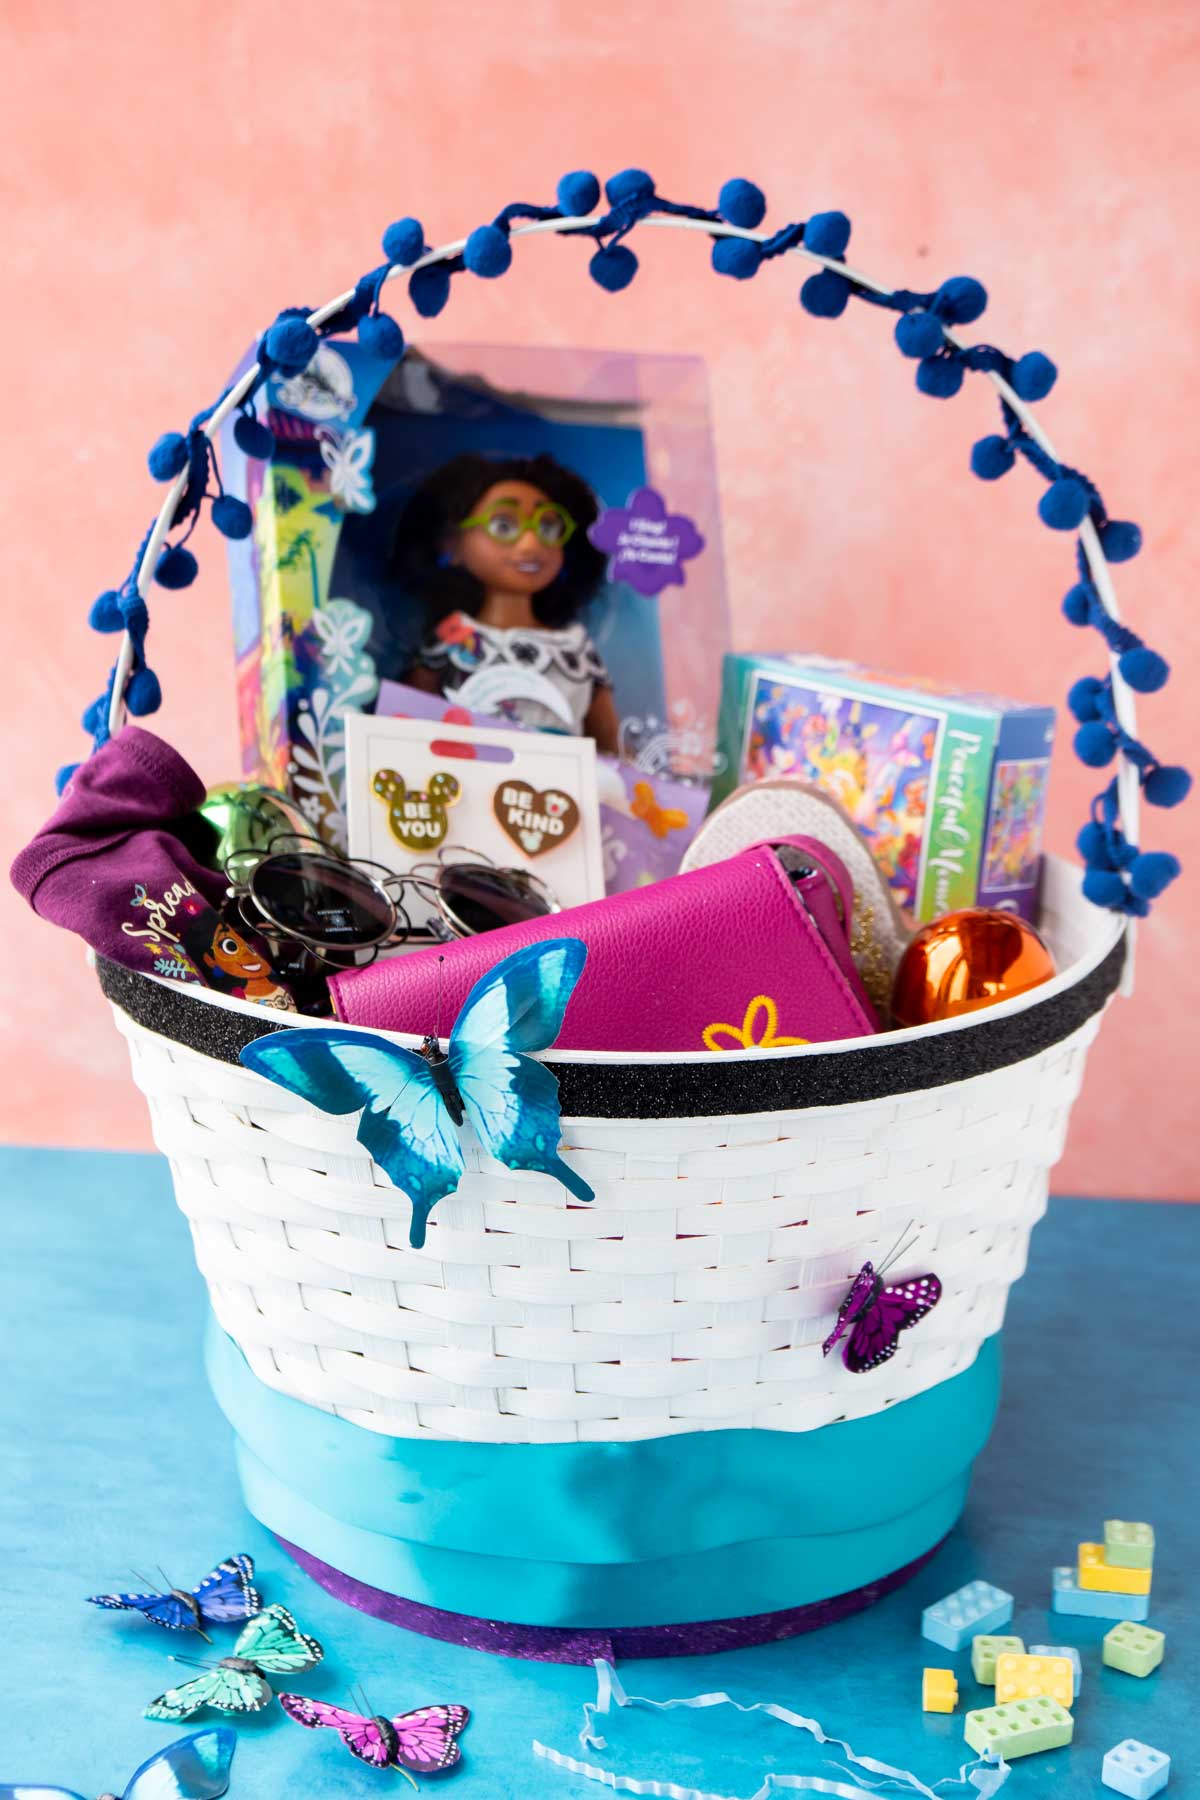 Encanto Easter basket filled with Mirabel items